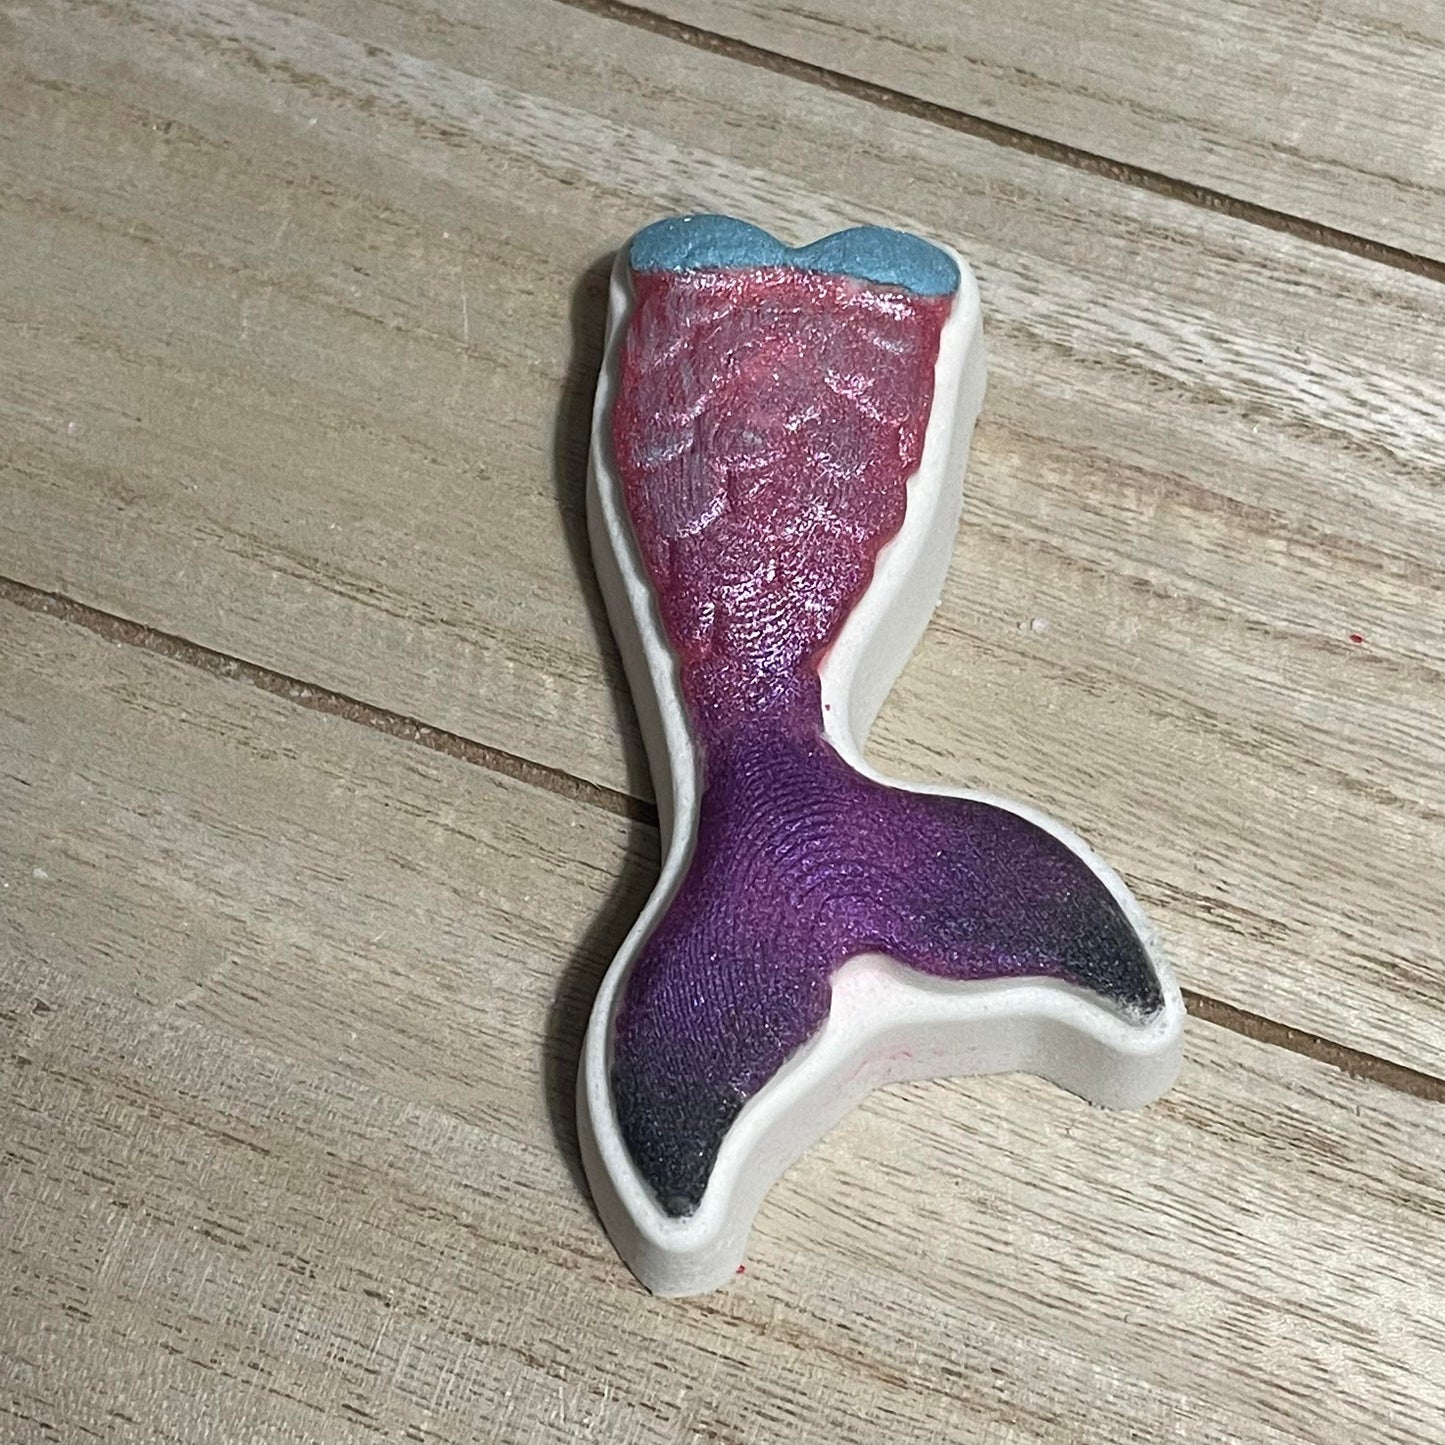 Mermaid Tail Hybrid Mold